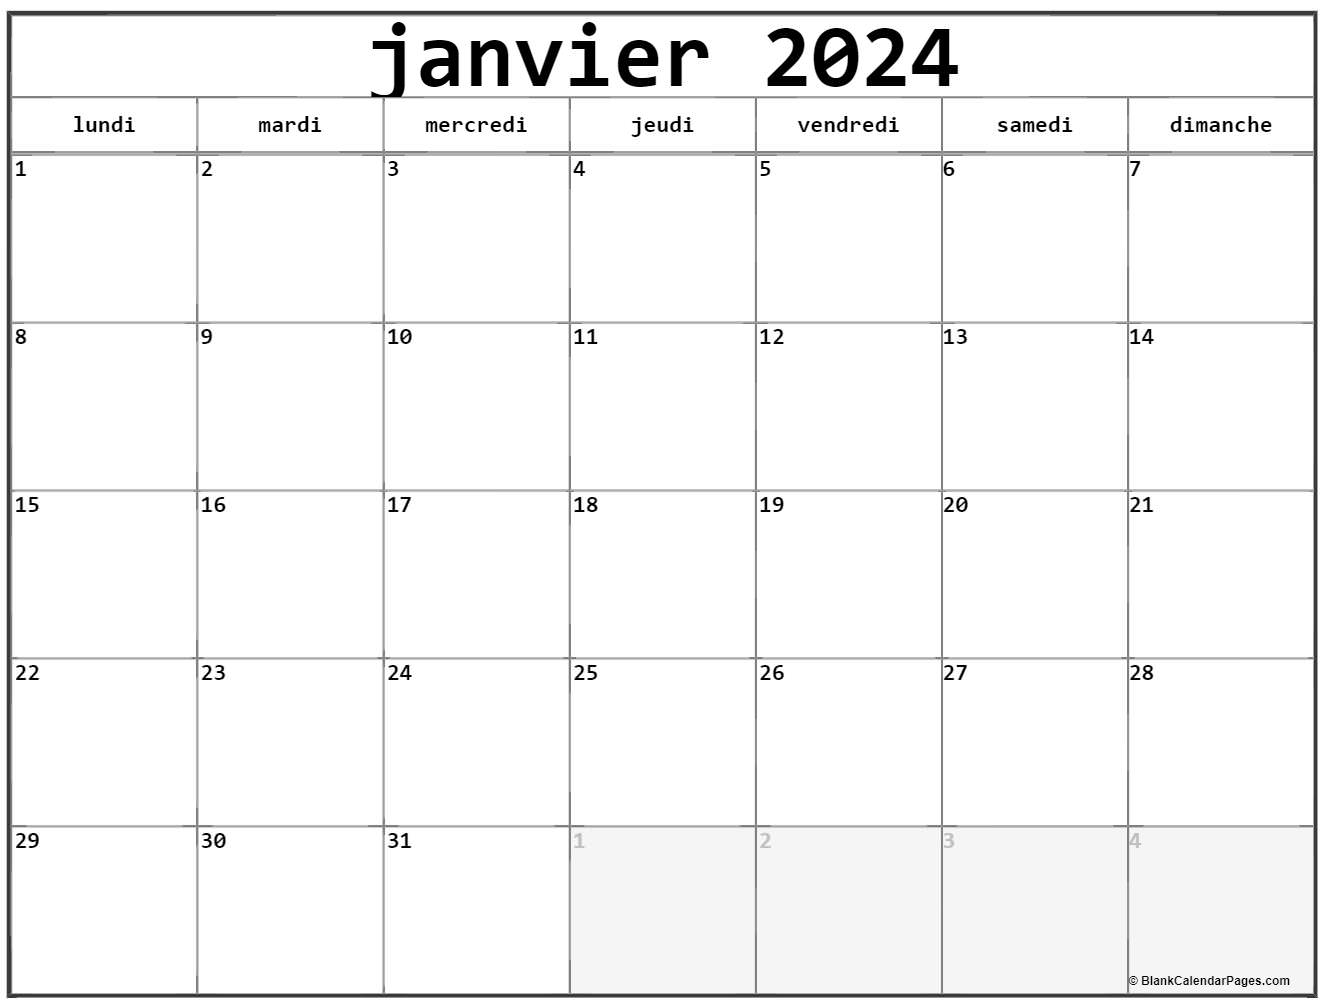 Calendrier mensuel à imprimer janvier 2024